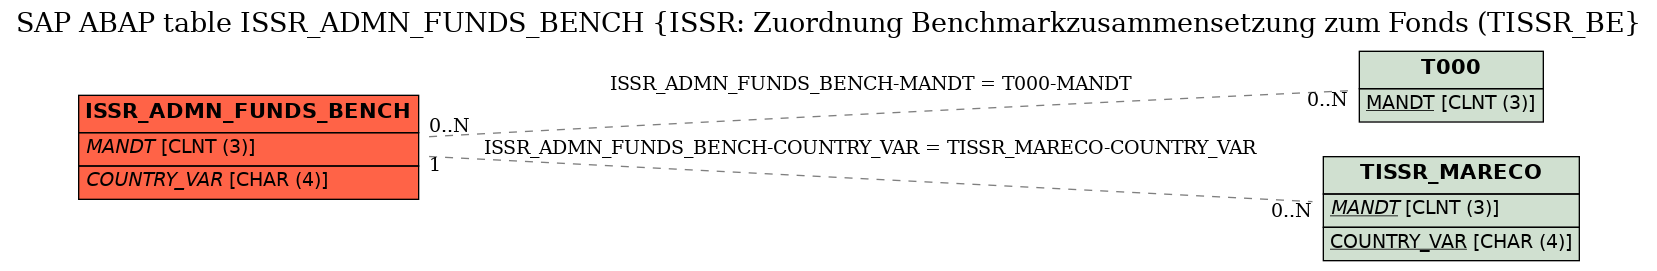 E-R Diagram for table ISSR_ADMN_FUNDS_BENCH (ISSR: Zuordnung Benchmarkzusammensetzung zum Fonds (TISSR_BE)